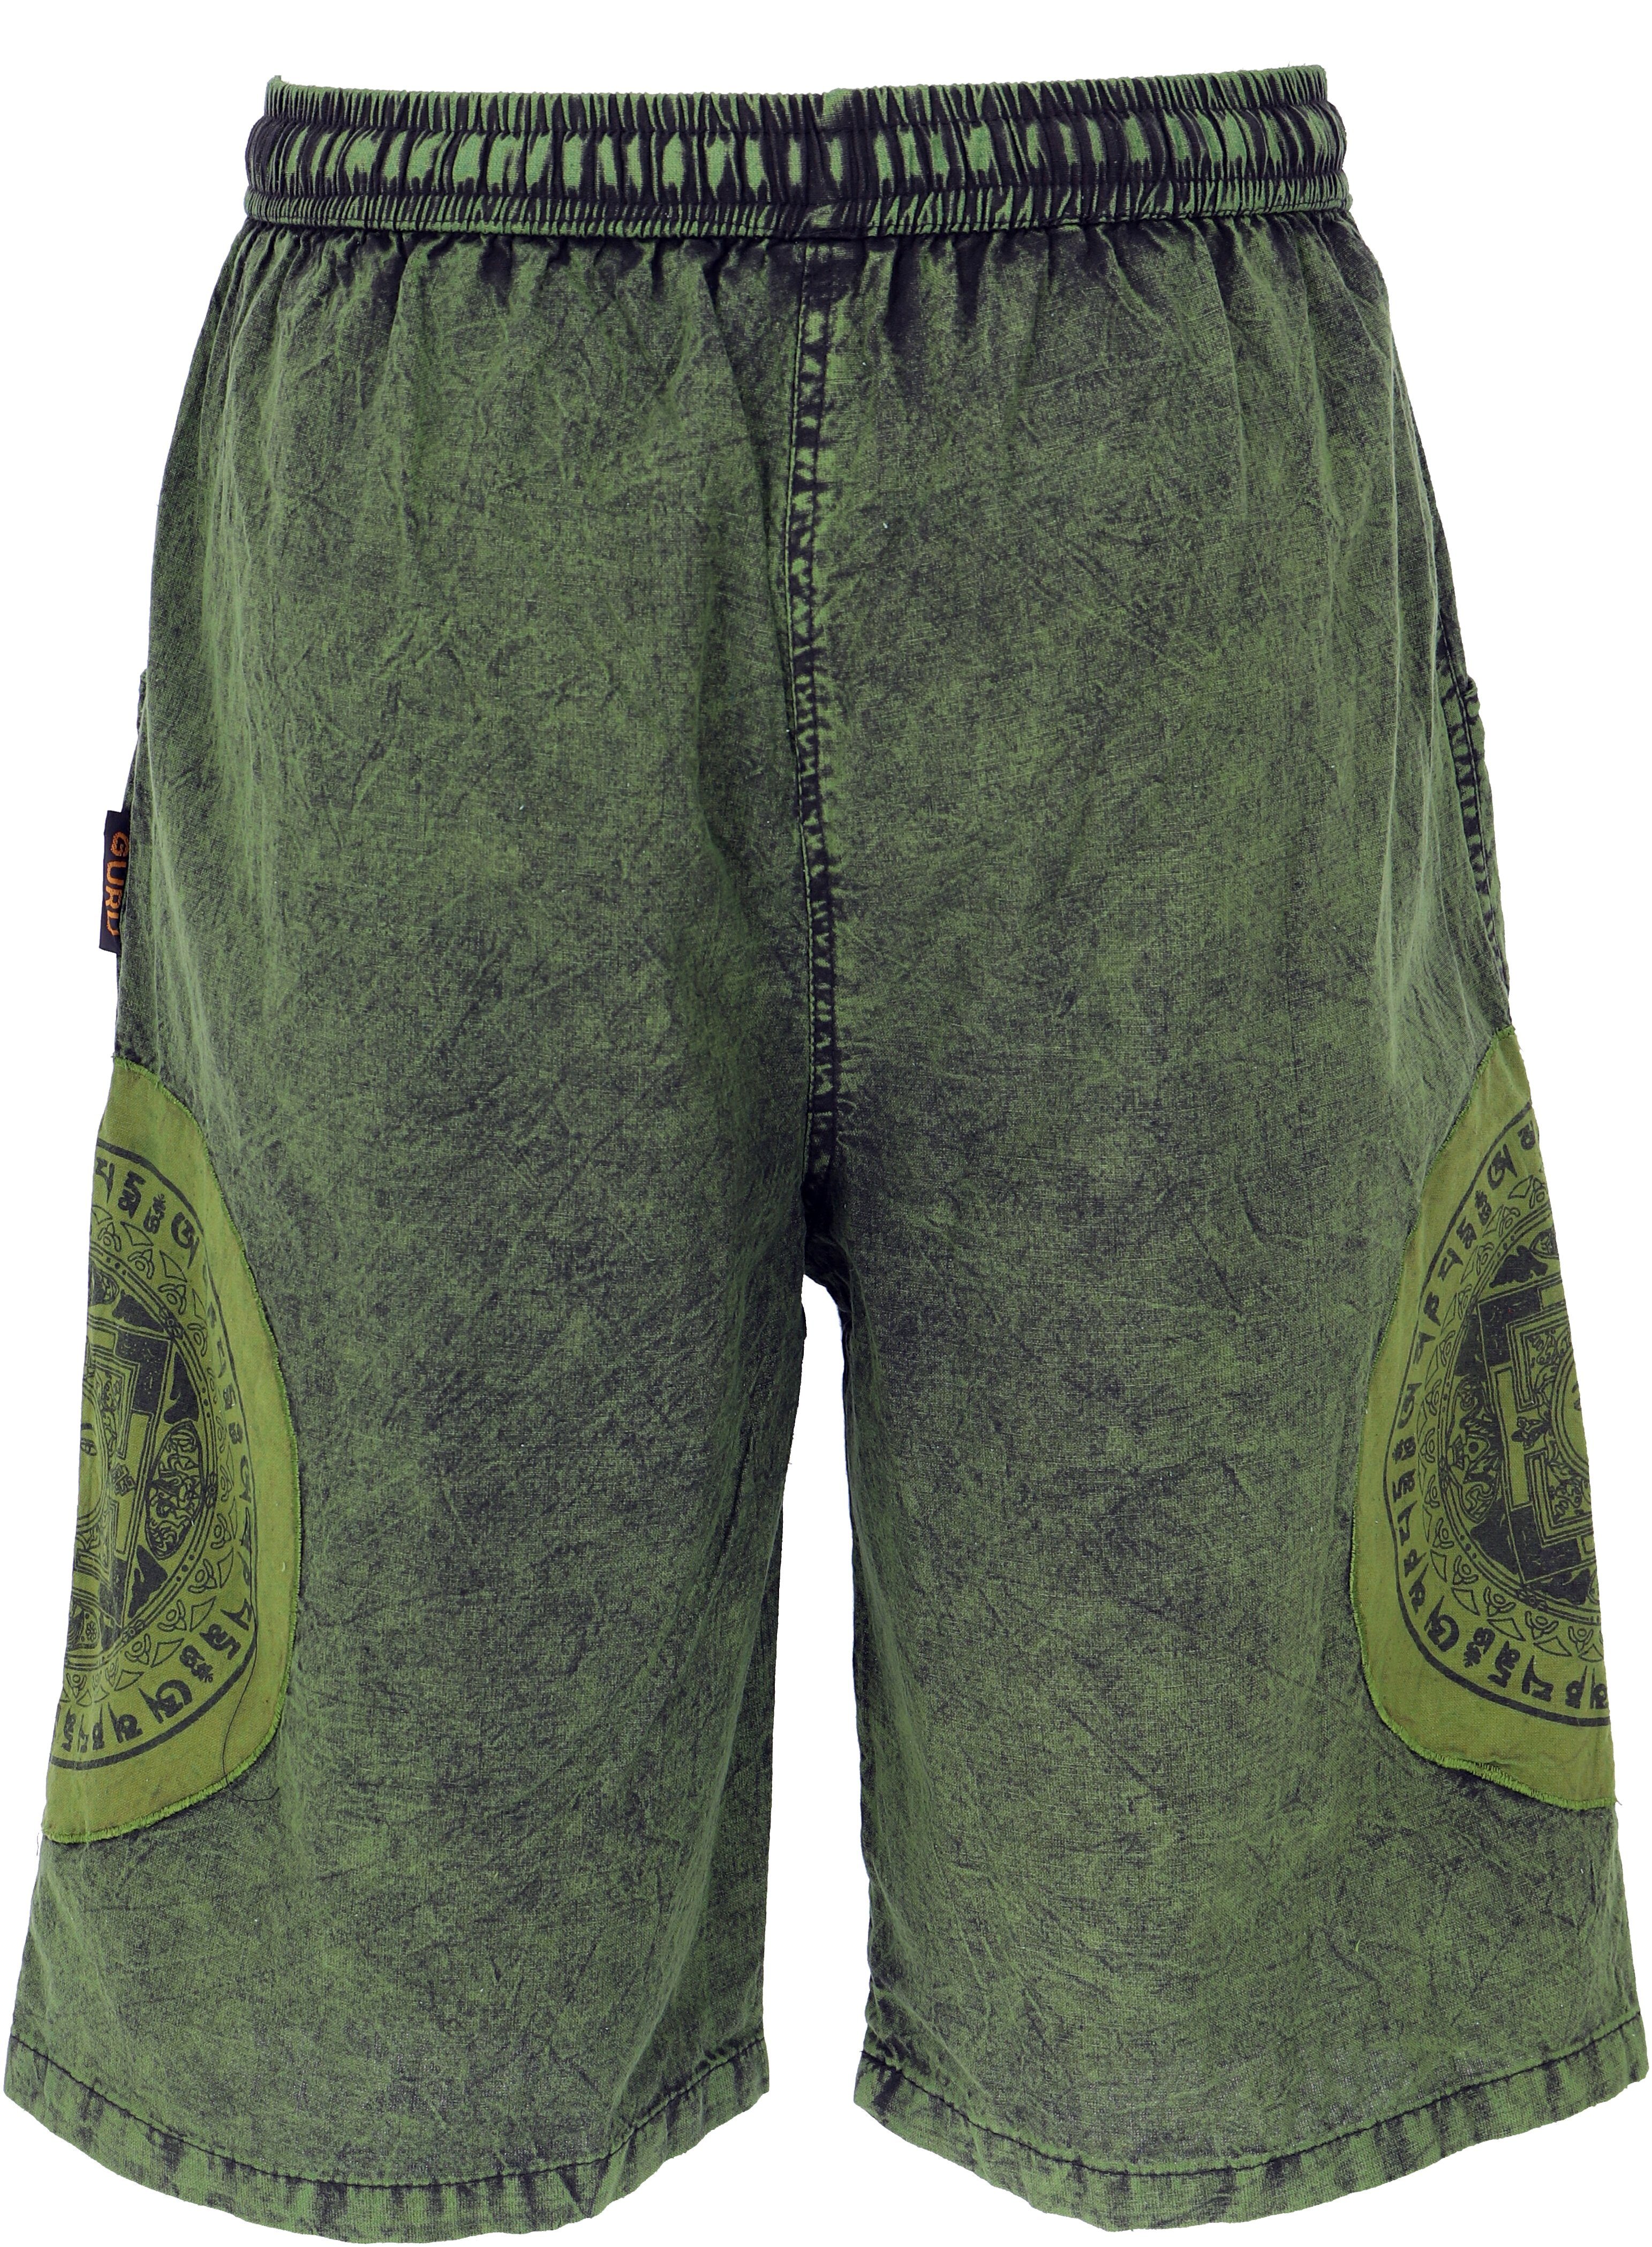 Guru-Shop Relaxhose Ethno Bekleidung Style, Shorts.. Patchwork Ethno Yogashorts, Hippie, alternative grün Stonwasch